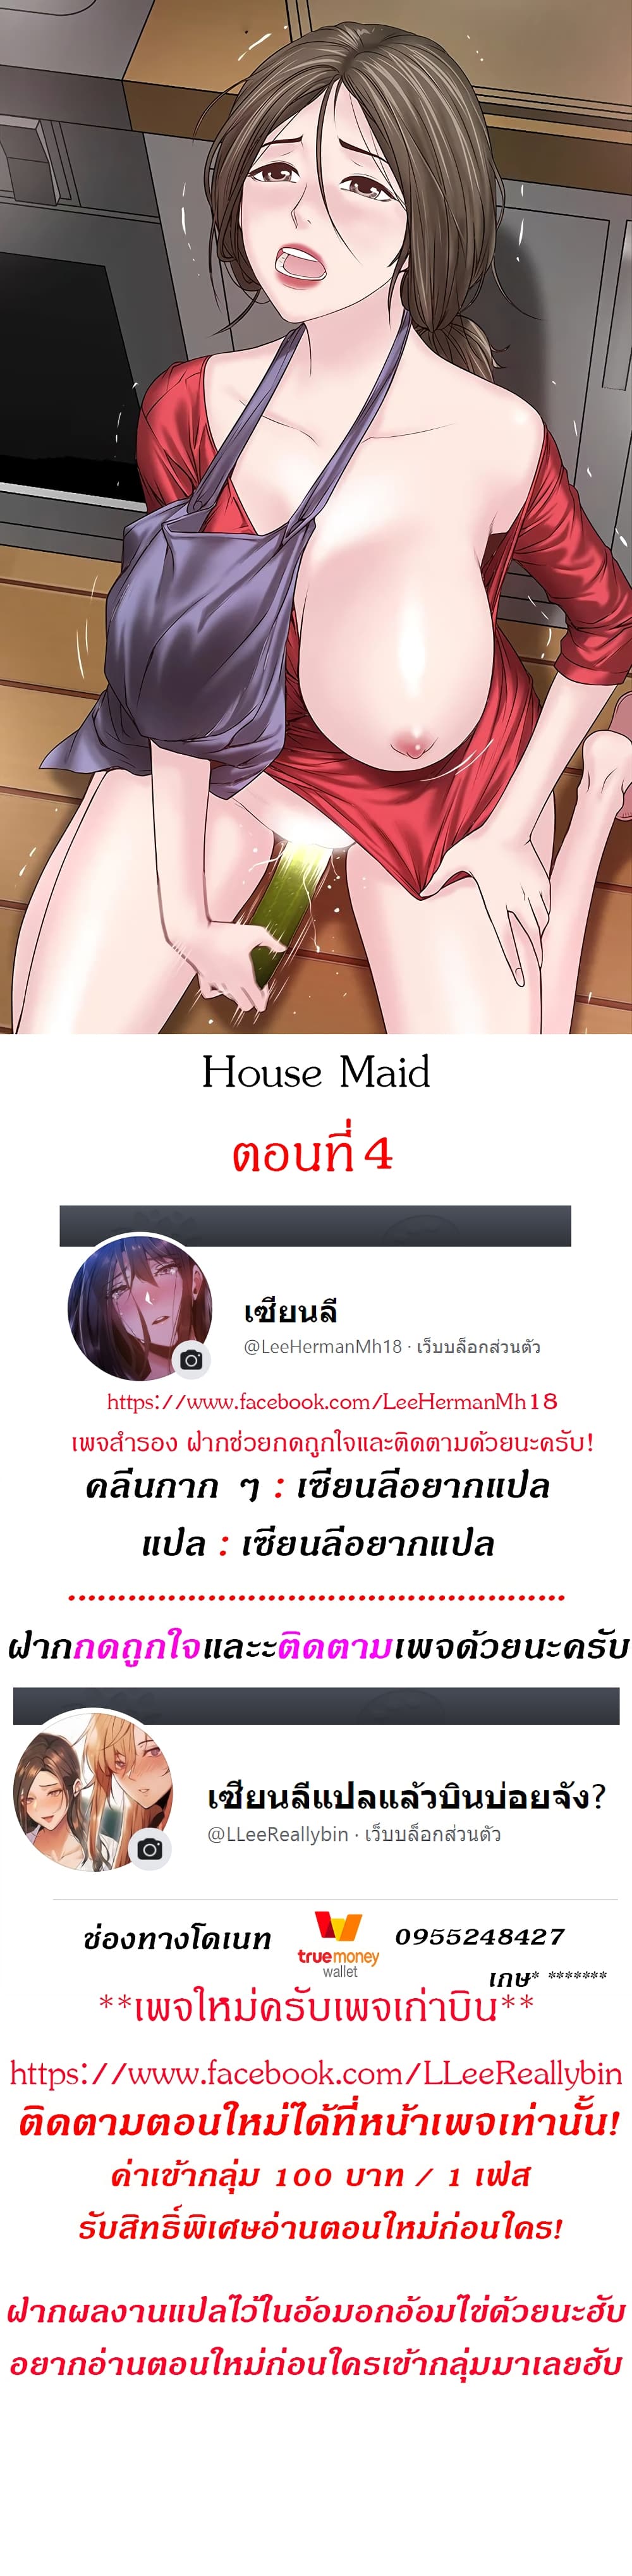 House Maid 4 (1)